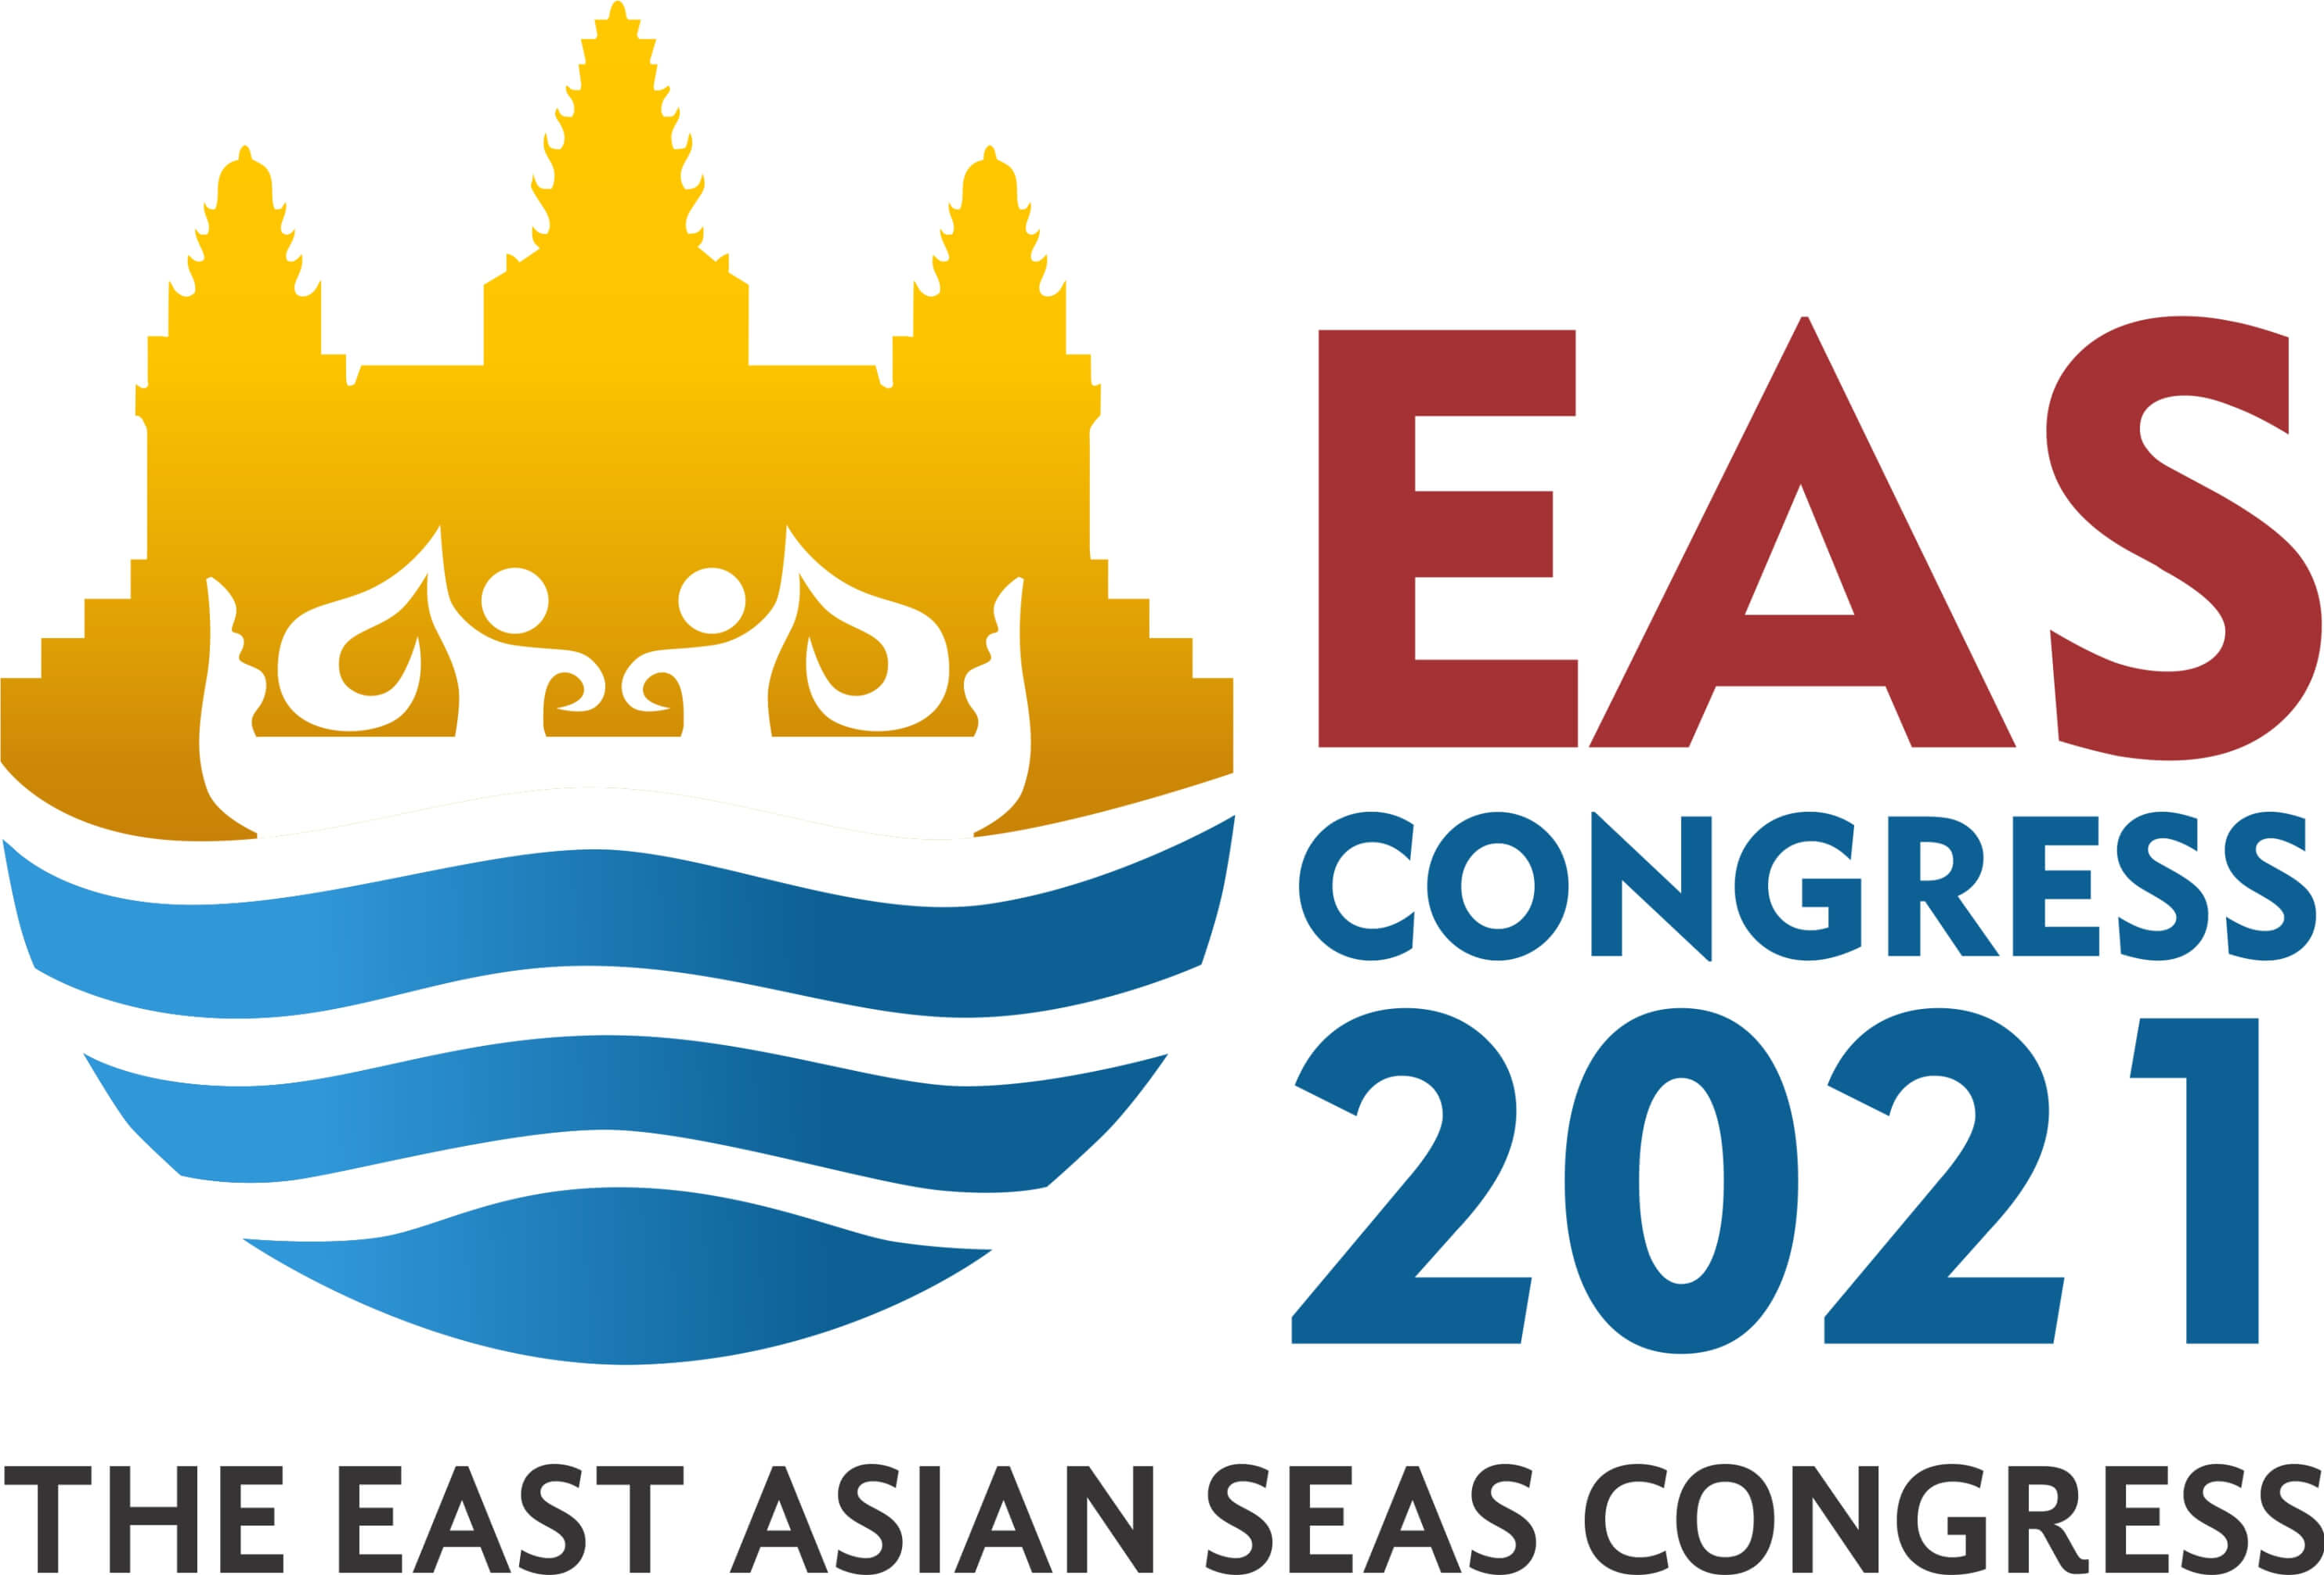 EAS Congress 2021 logo